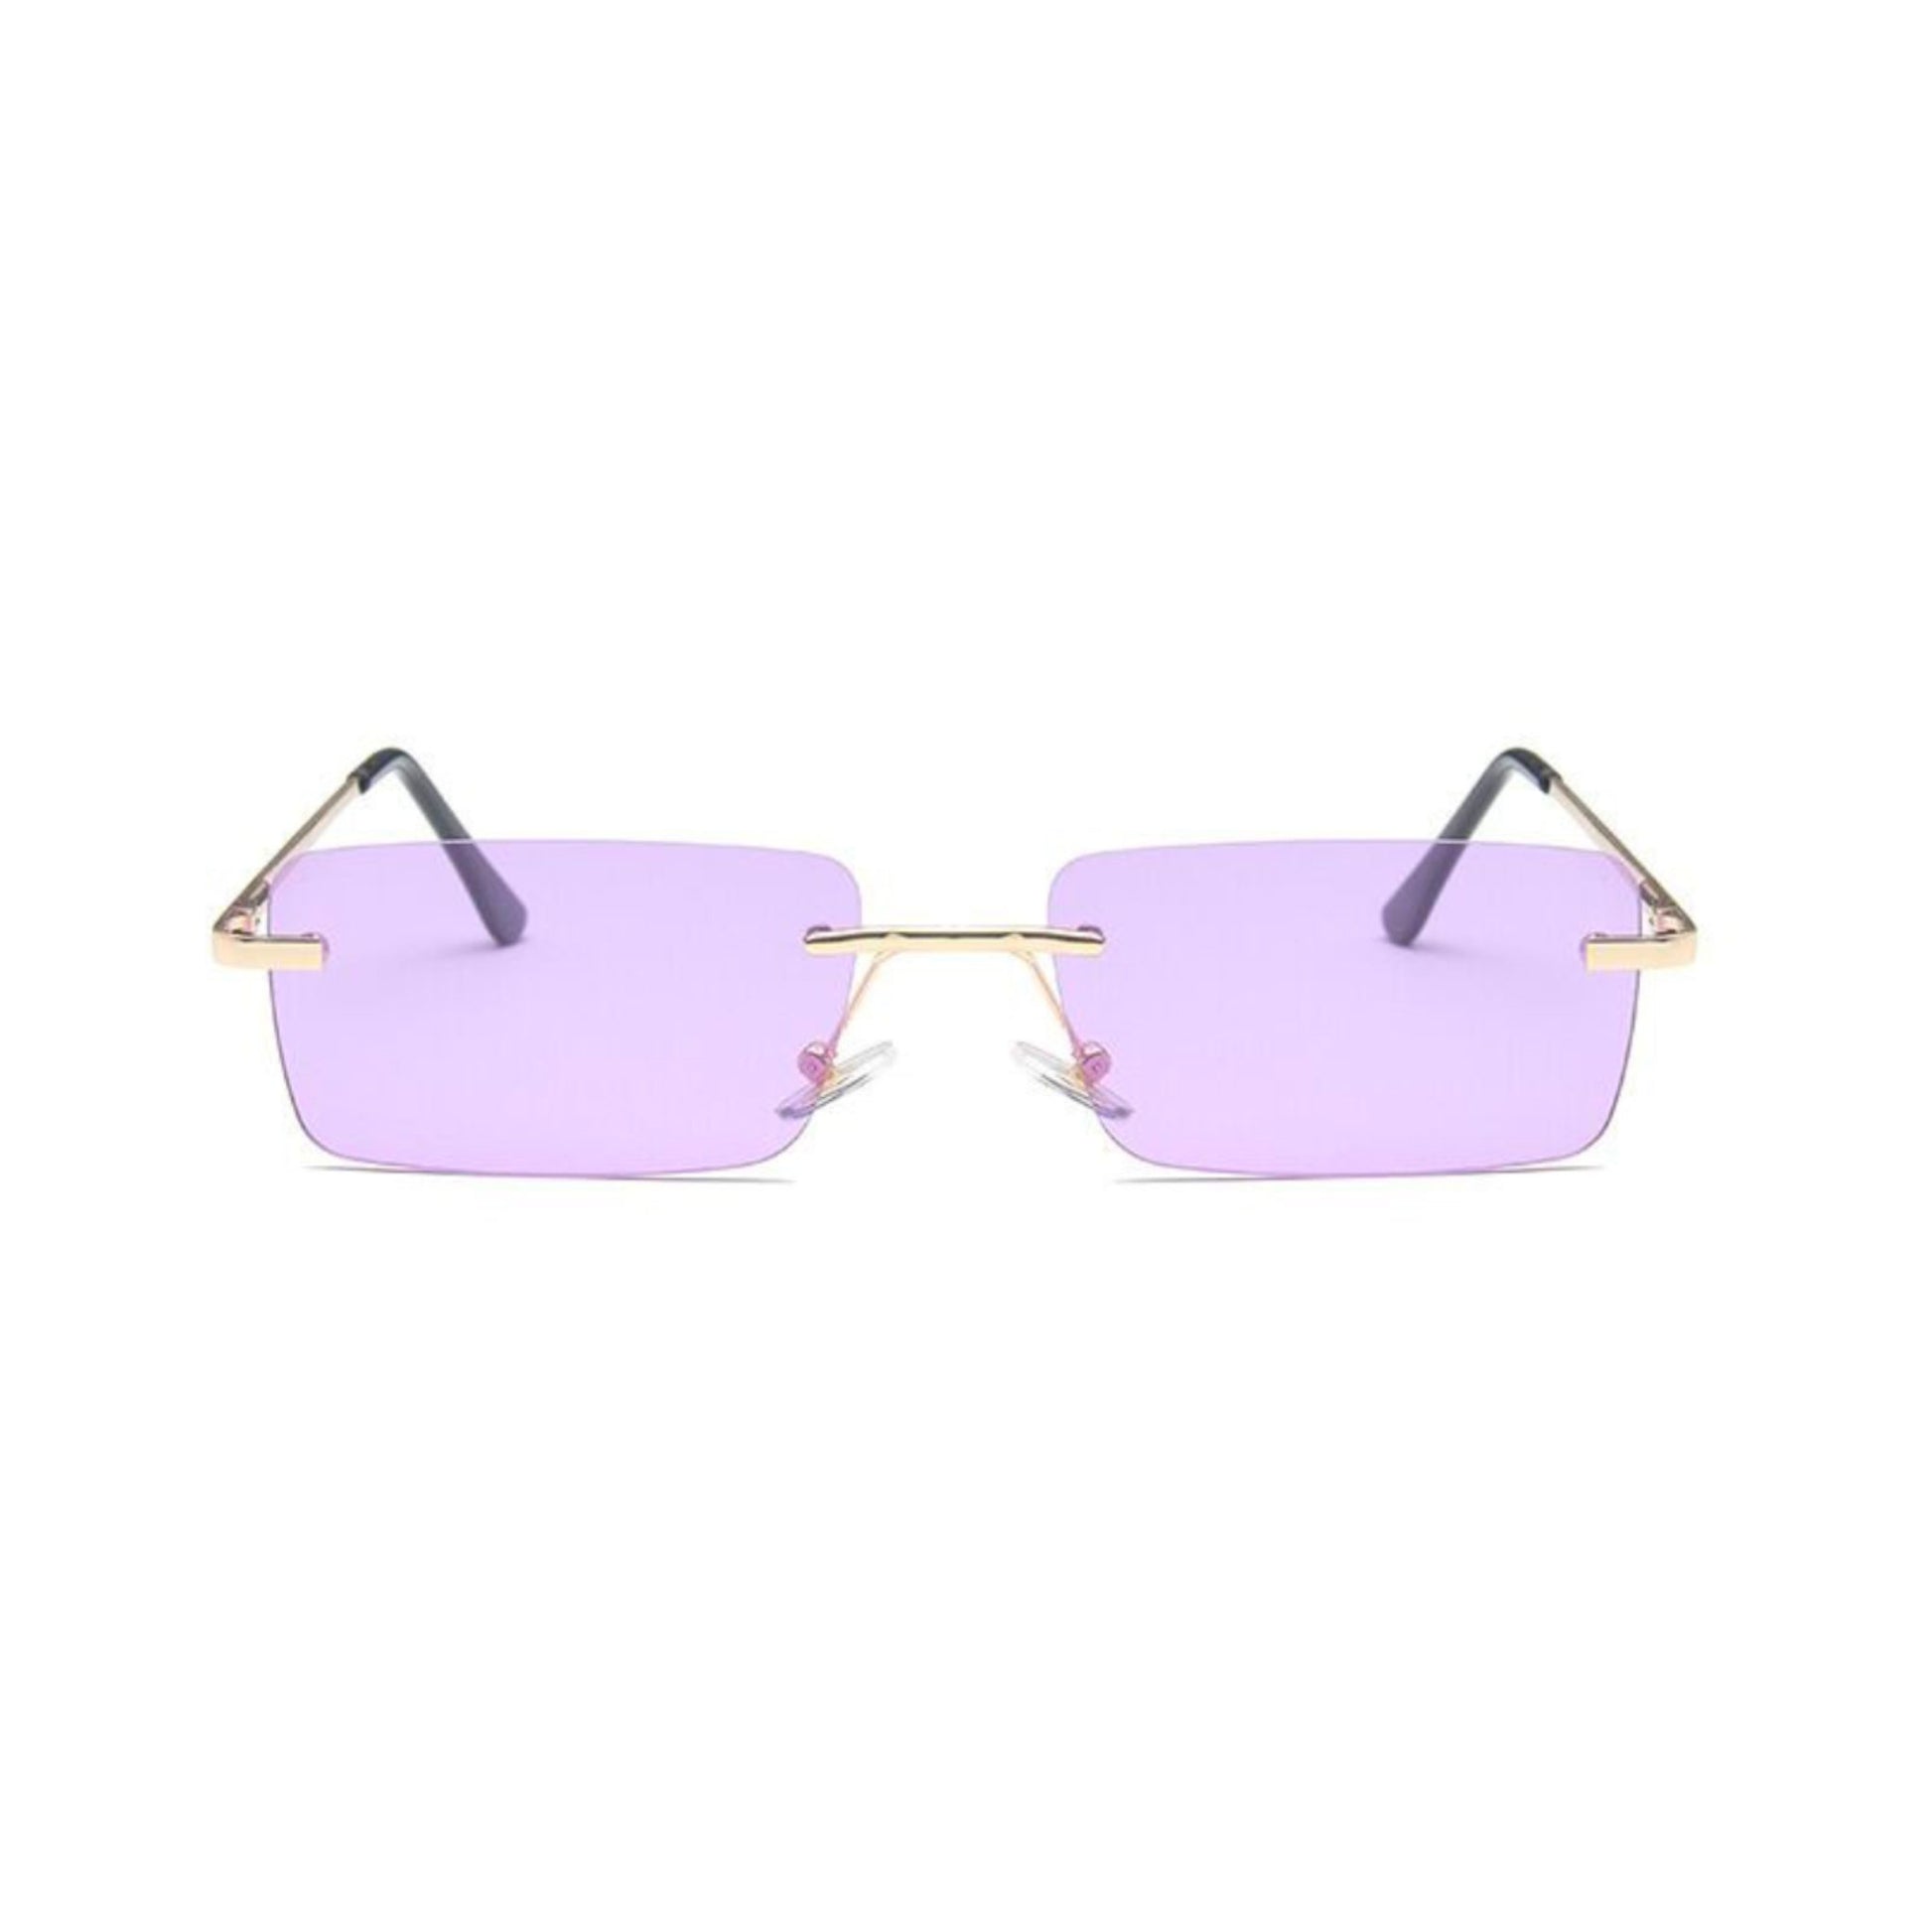 Ορθογώνια Γυαλιά Ηλίου Tez της Exposure Sunglasses με προστασία UV400 σε χρυσό χρώμα σκελετού και μωβ φακό.